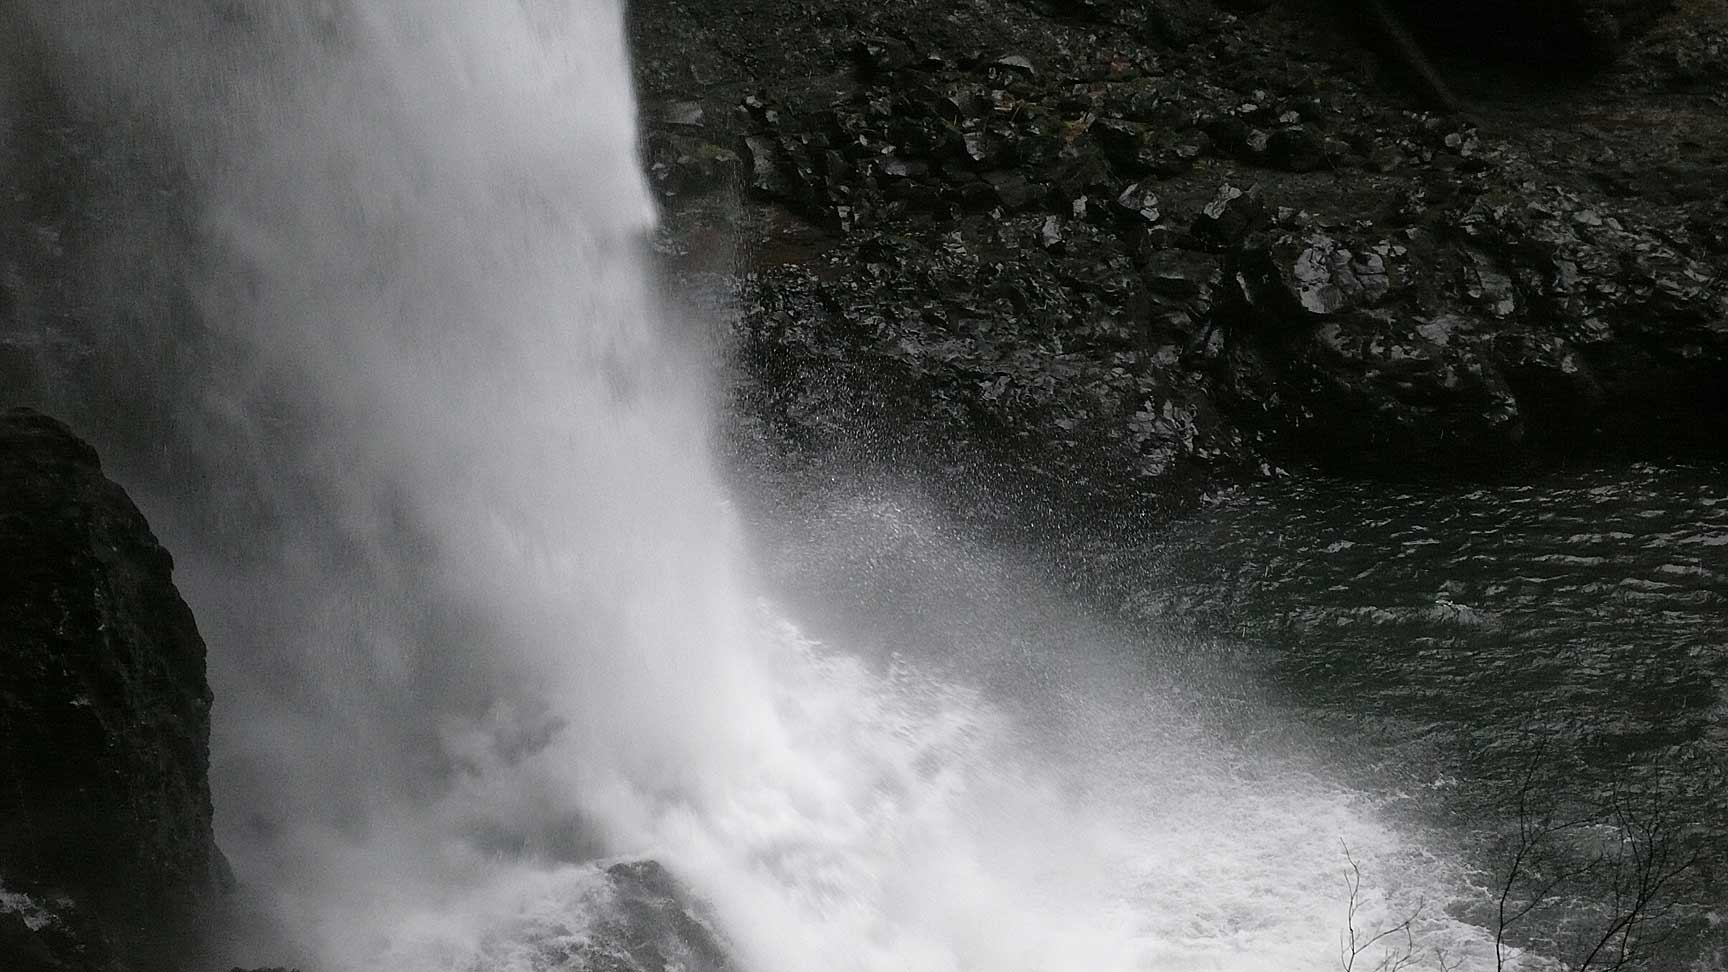 Silver Falls